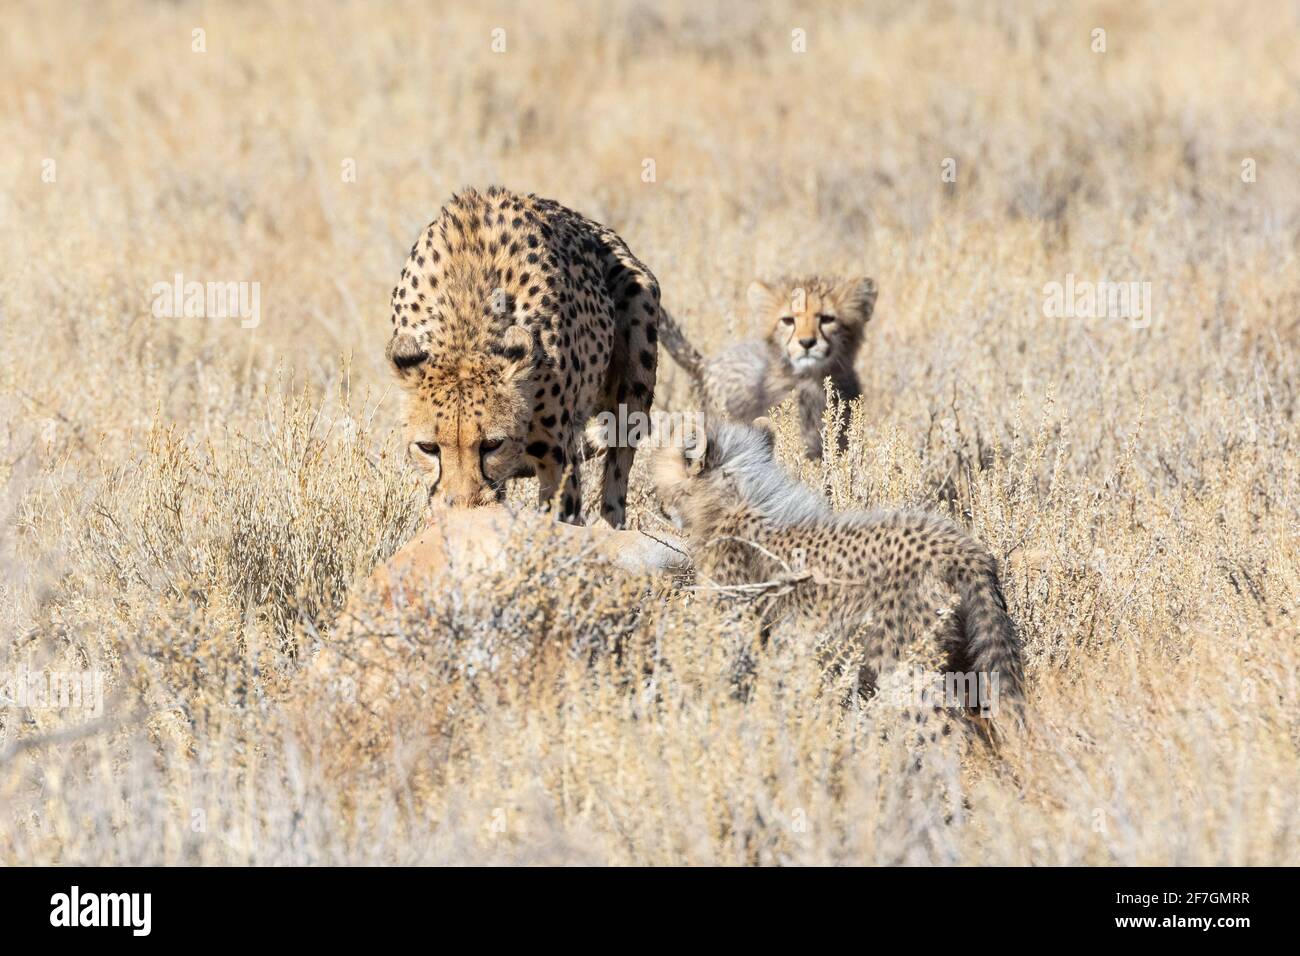 Cheetah (Acinonyx jubatus) Femme déplaçant un Springbok frais tuer hors de la prairie ouverte dans la couverture surveillée par des petits, Kalahari, Afrique du Sud Banque D'Images